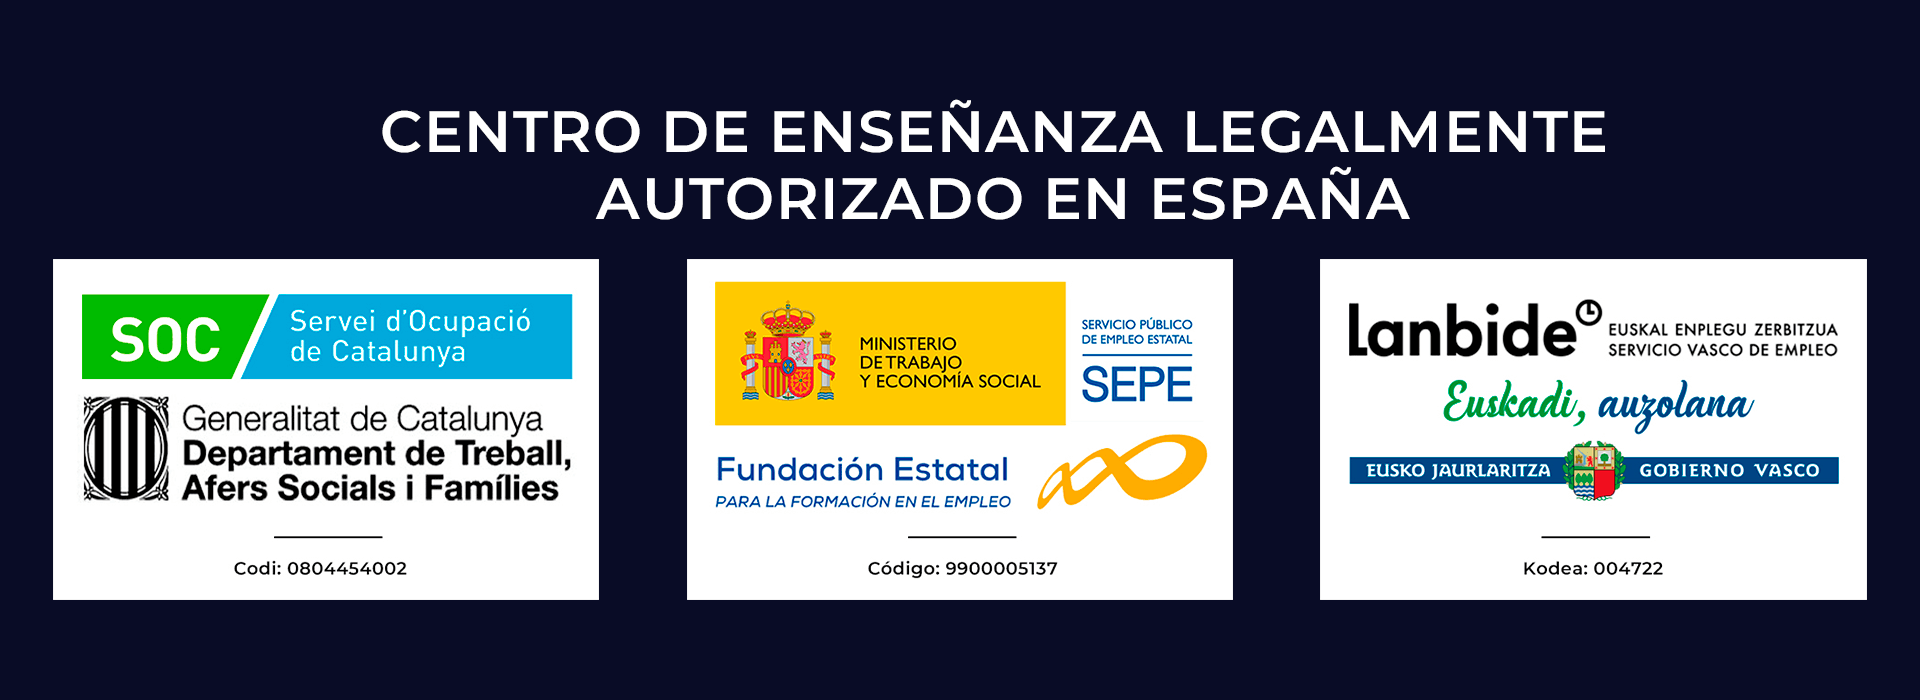 CIPSA Centro de enseñanza legalmente autorizado en España